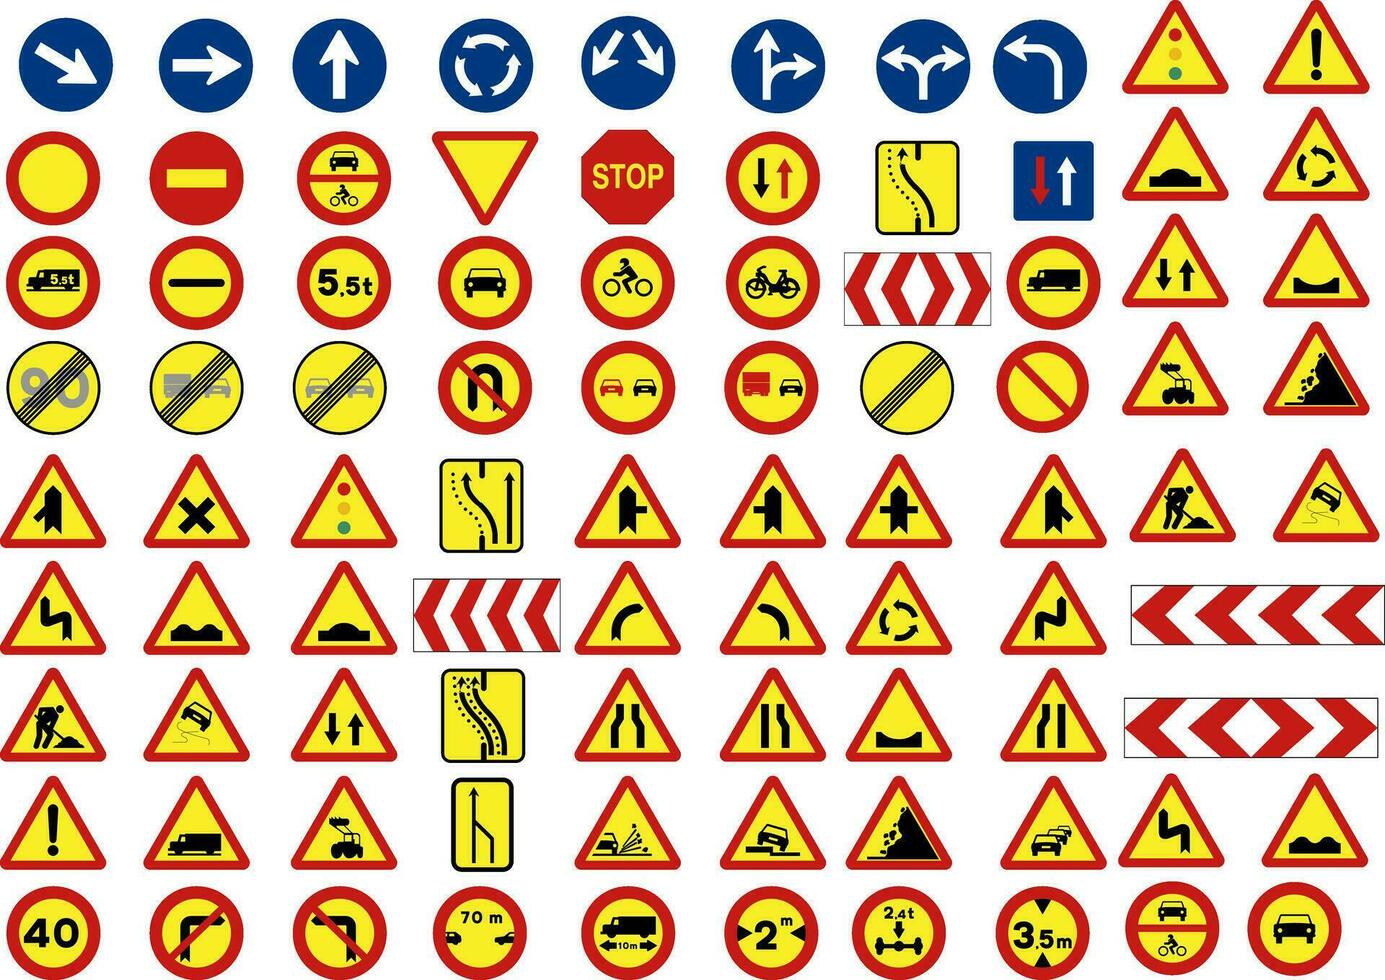 tecken eller trafik symboler i konstruktion vektor